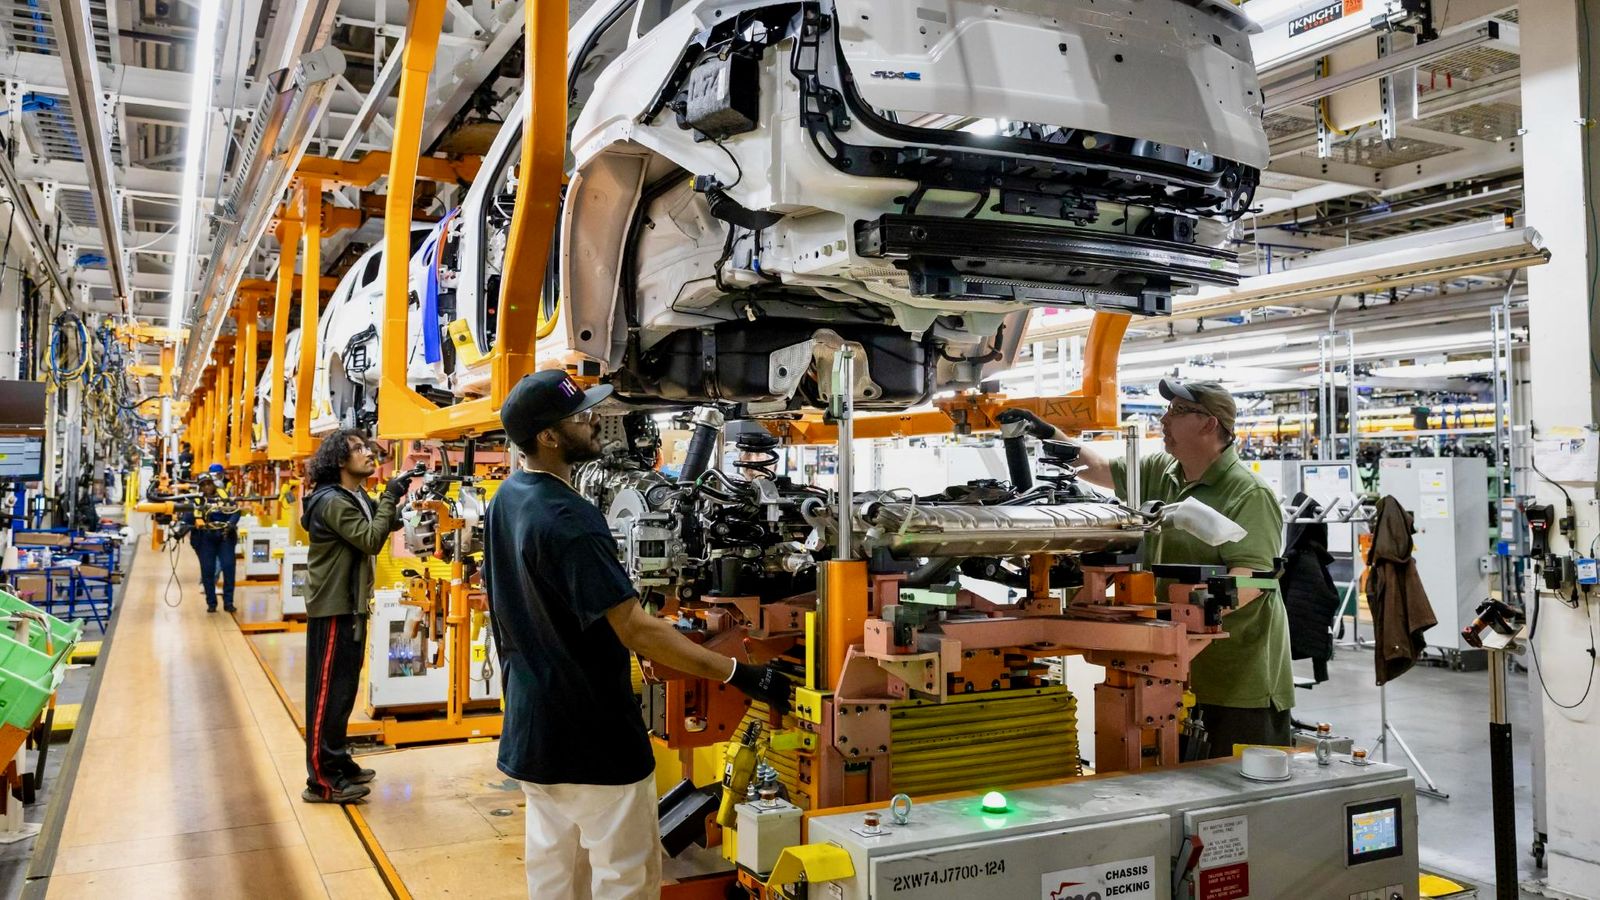 Stellantis streicht in Detroit weitere 200 zusätzliche Arbeitskräfte, da die Entlassungen in der Autoindustrie anhalten